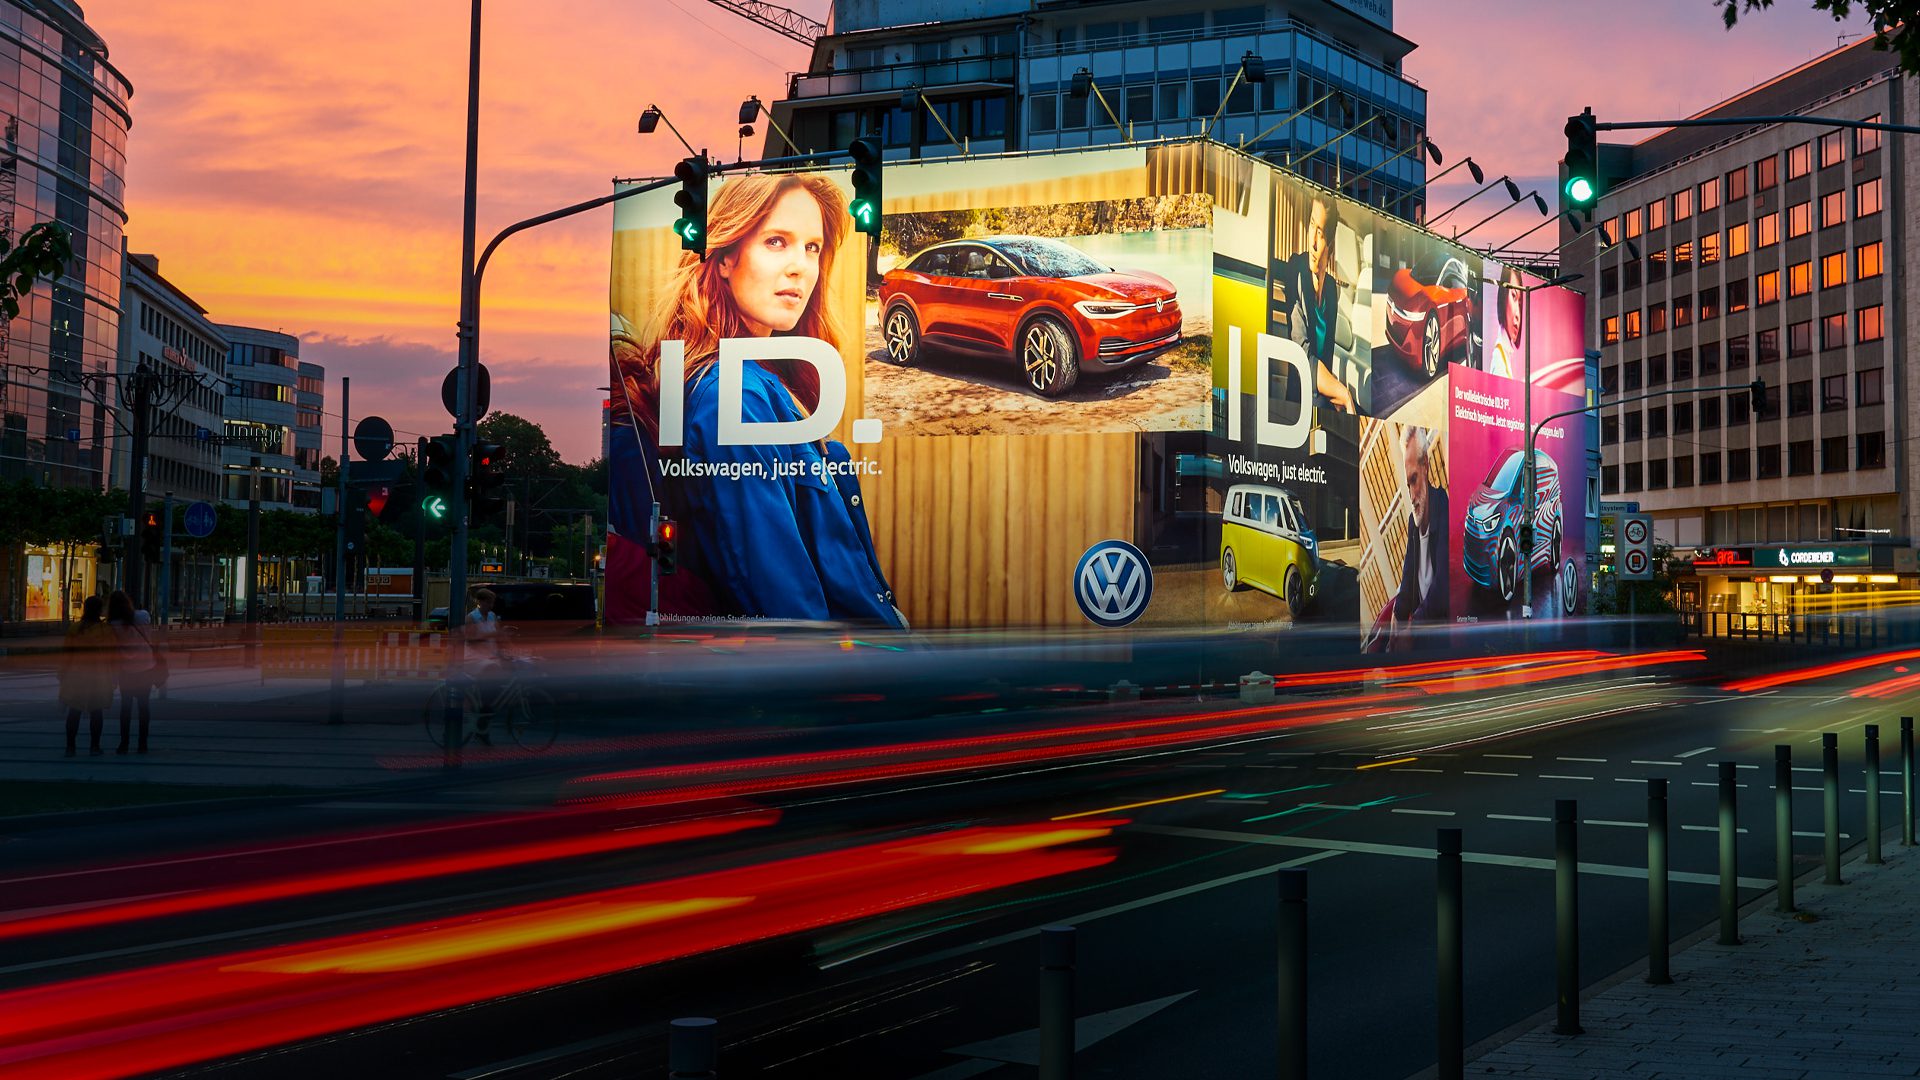 Werbekampagne für VW in Düsseldorf am Kö Bogen